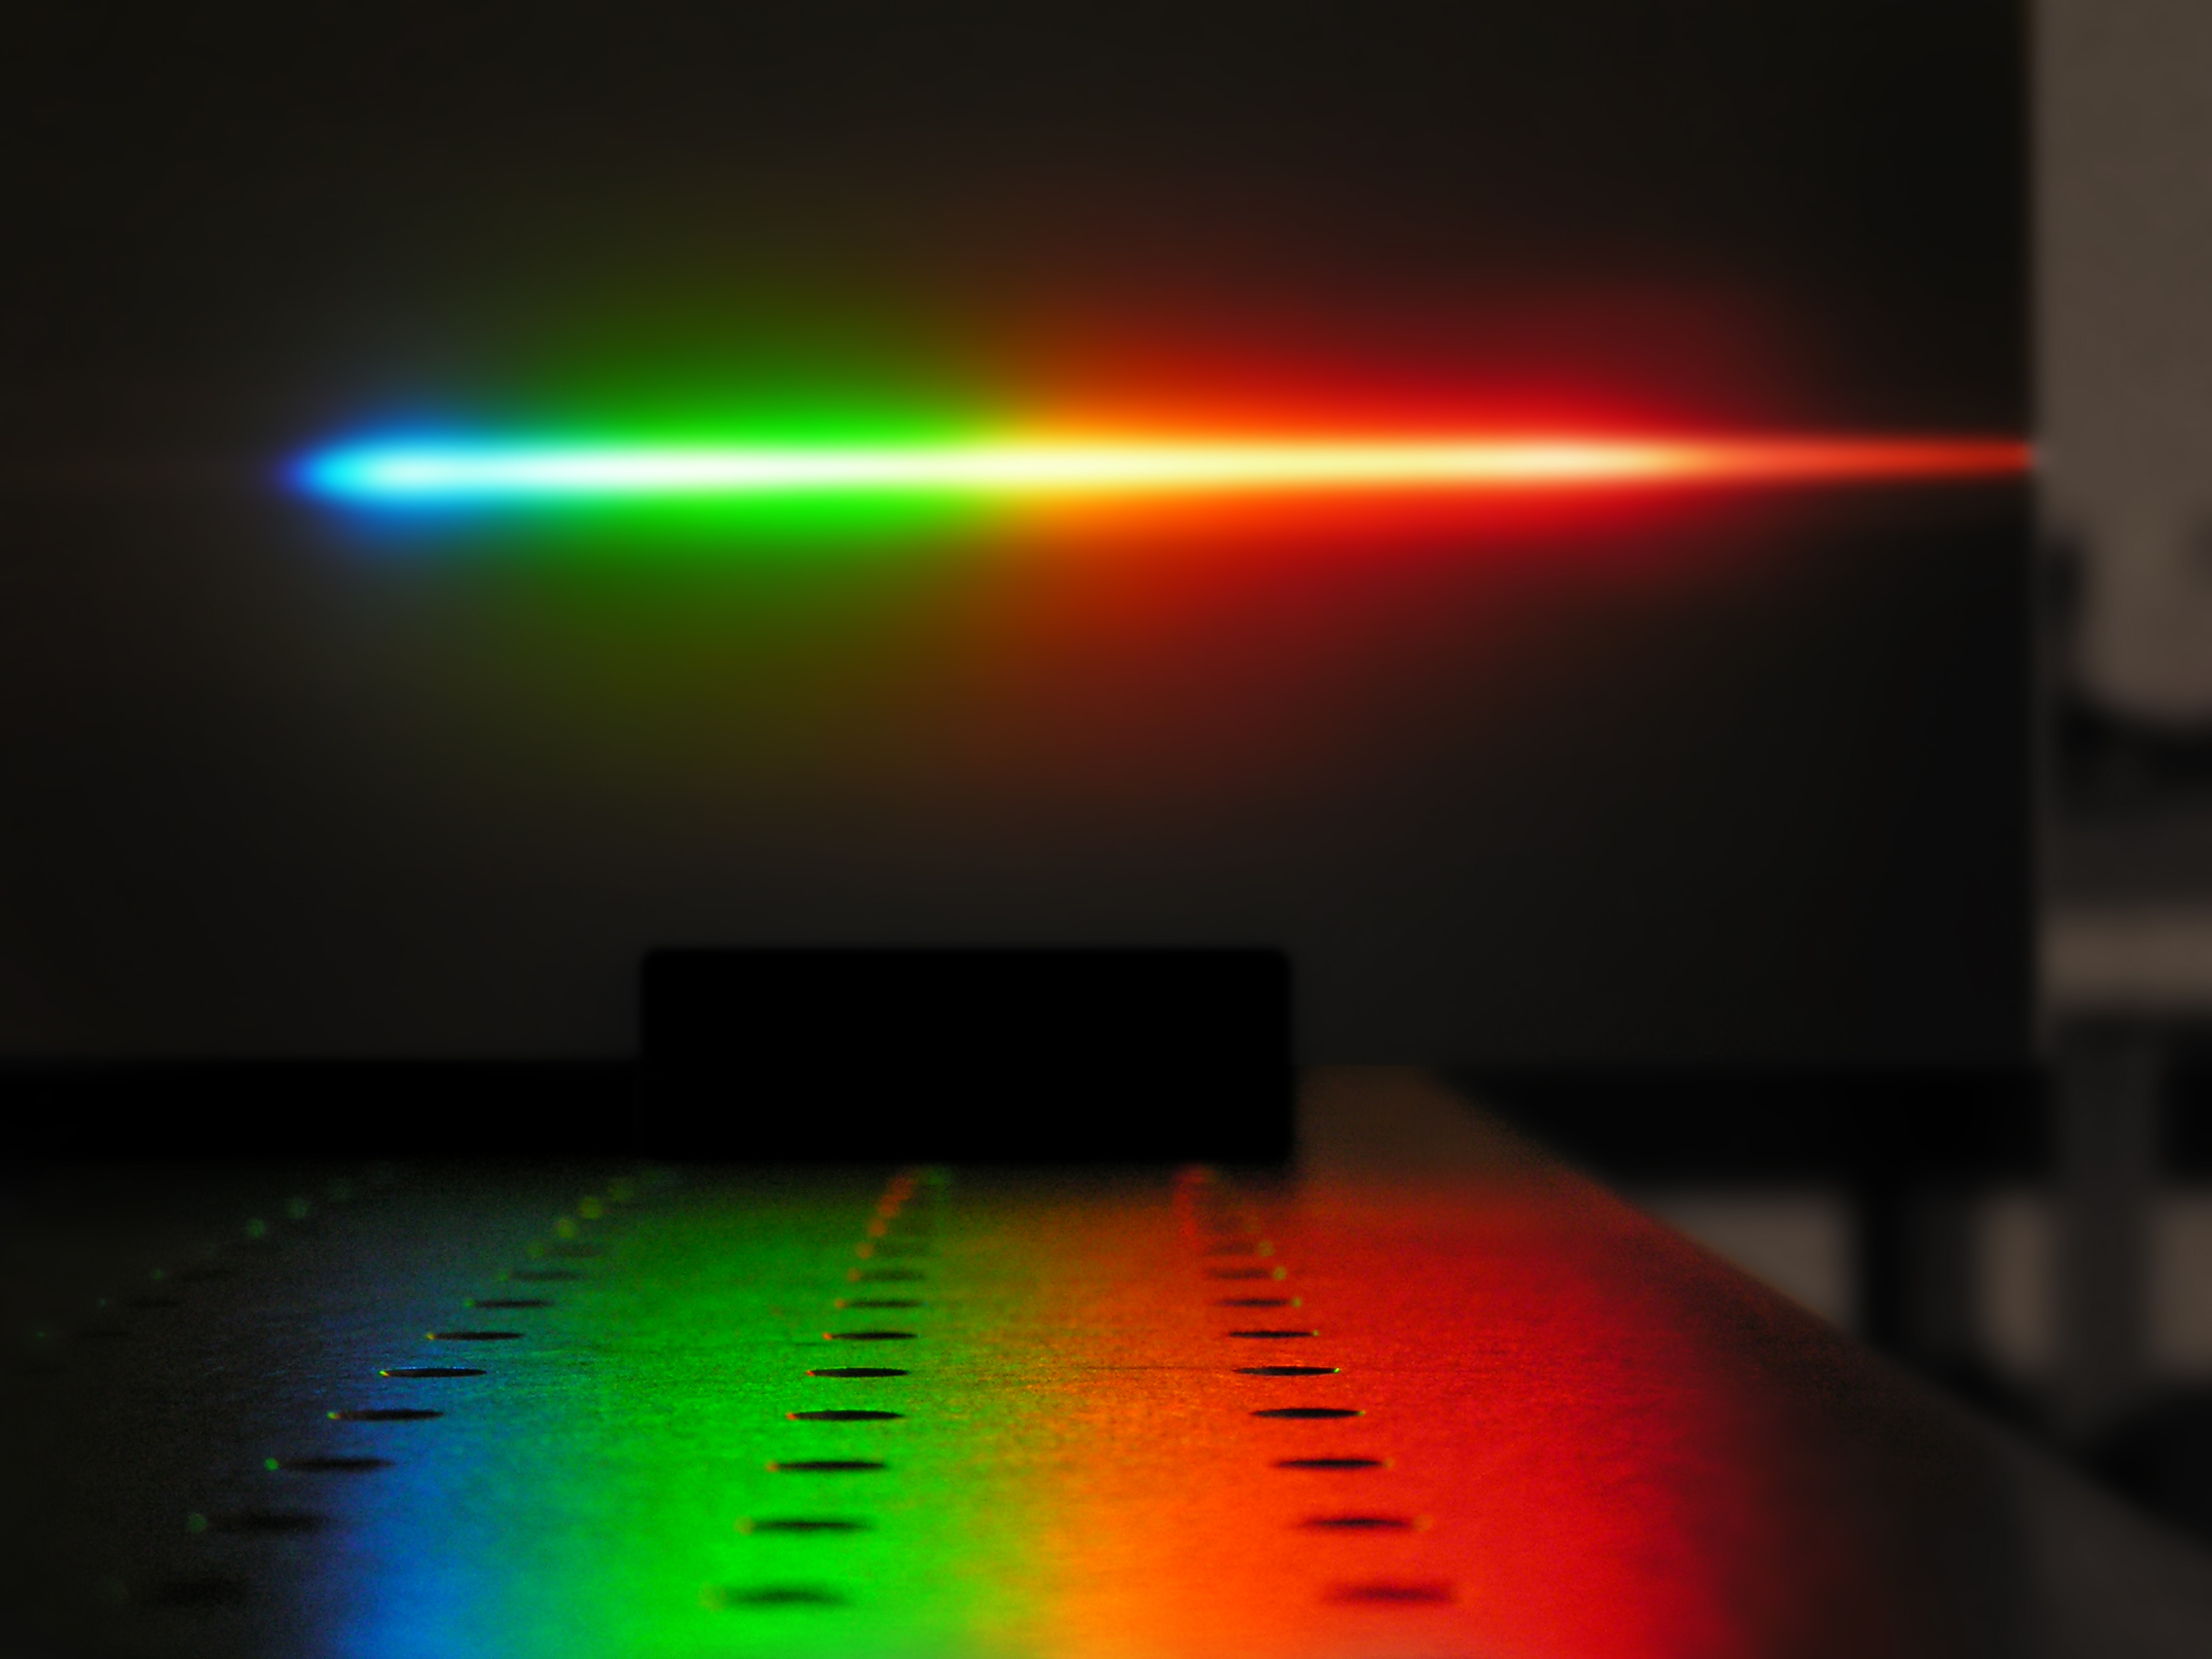 Weißlichtlaser emittieren viele spektrale Komponenten und lassen sich wie andere Lasertypen fokussieren. Der am Fraunhofer AZOM entwickelte Weißlichtlaser ermöglicht Intensitäten auf der Probenoberfläche, die konventionelle Weißlichtquellen nicht erzielen können.